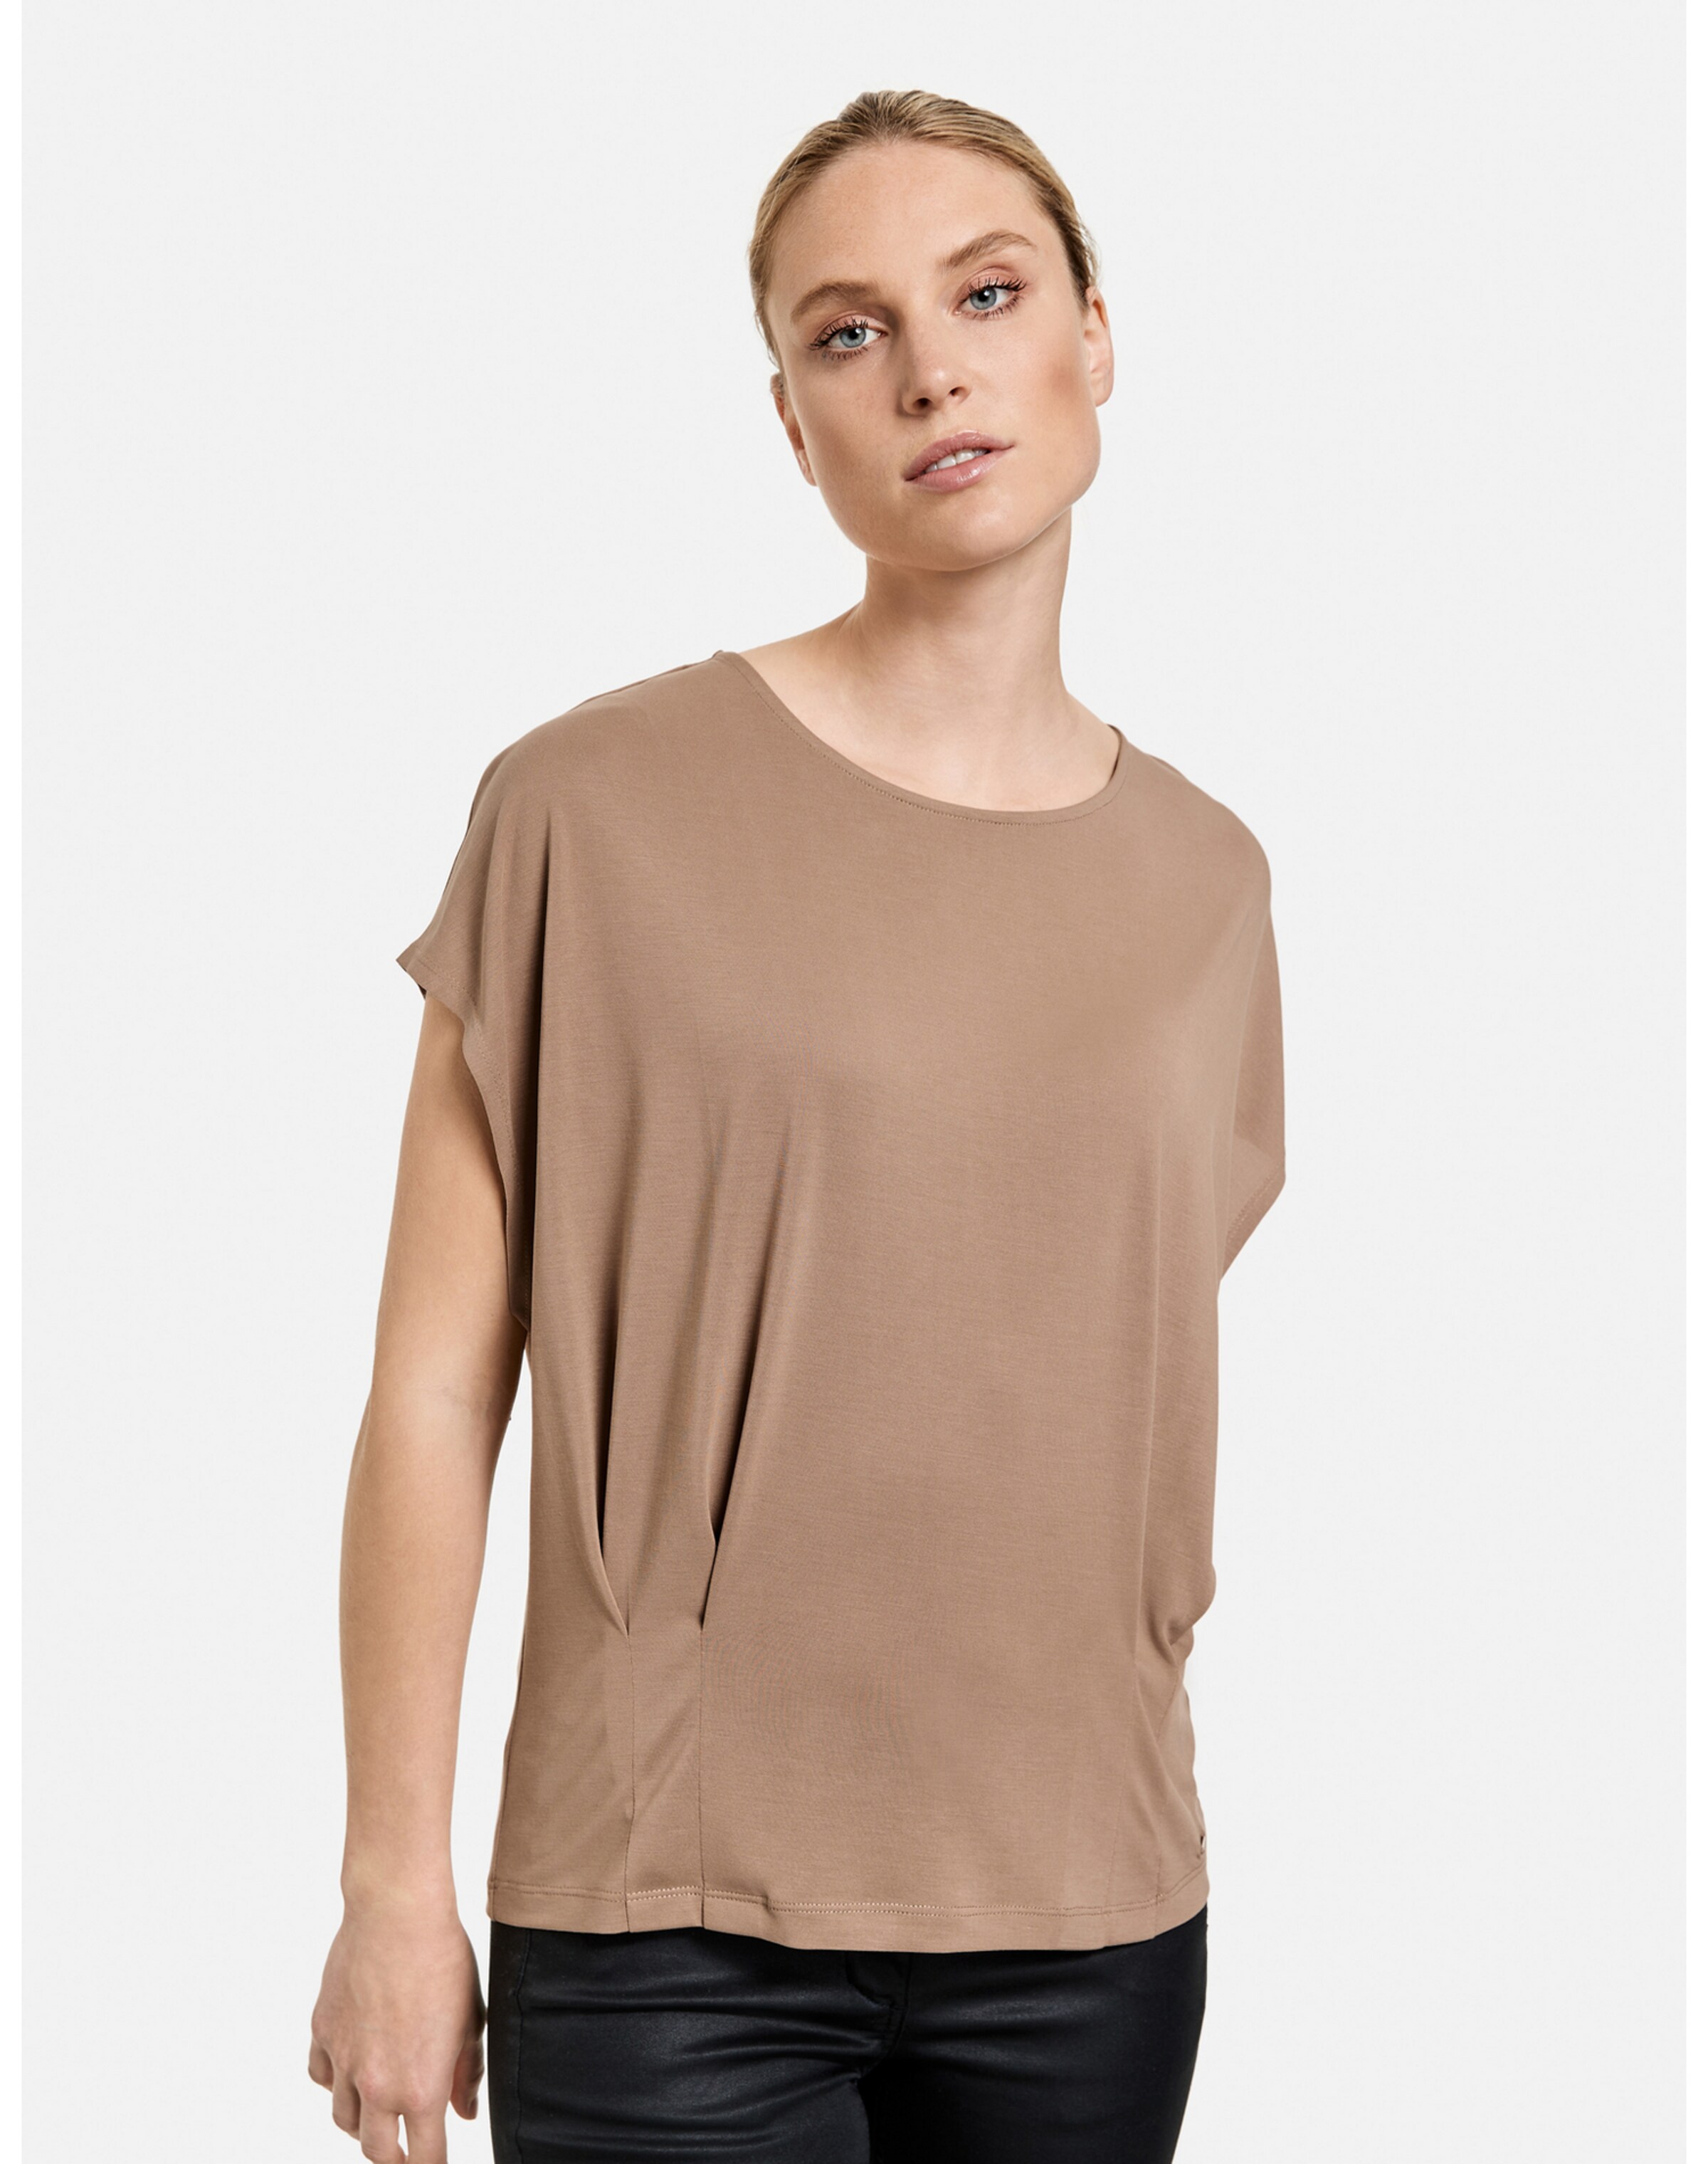 Frauen Shirts & Tops TAIFUN T-Shirt in Braun - DM31558